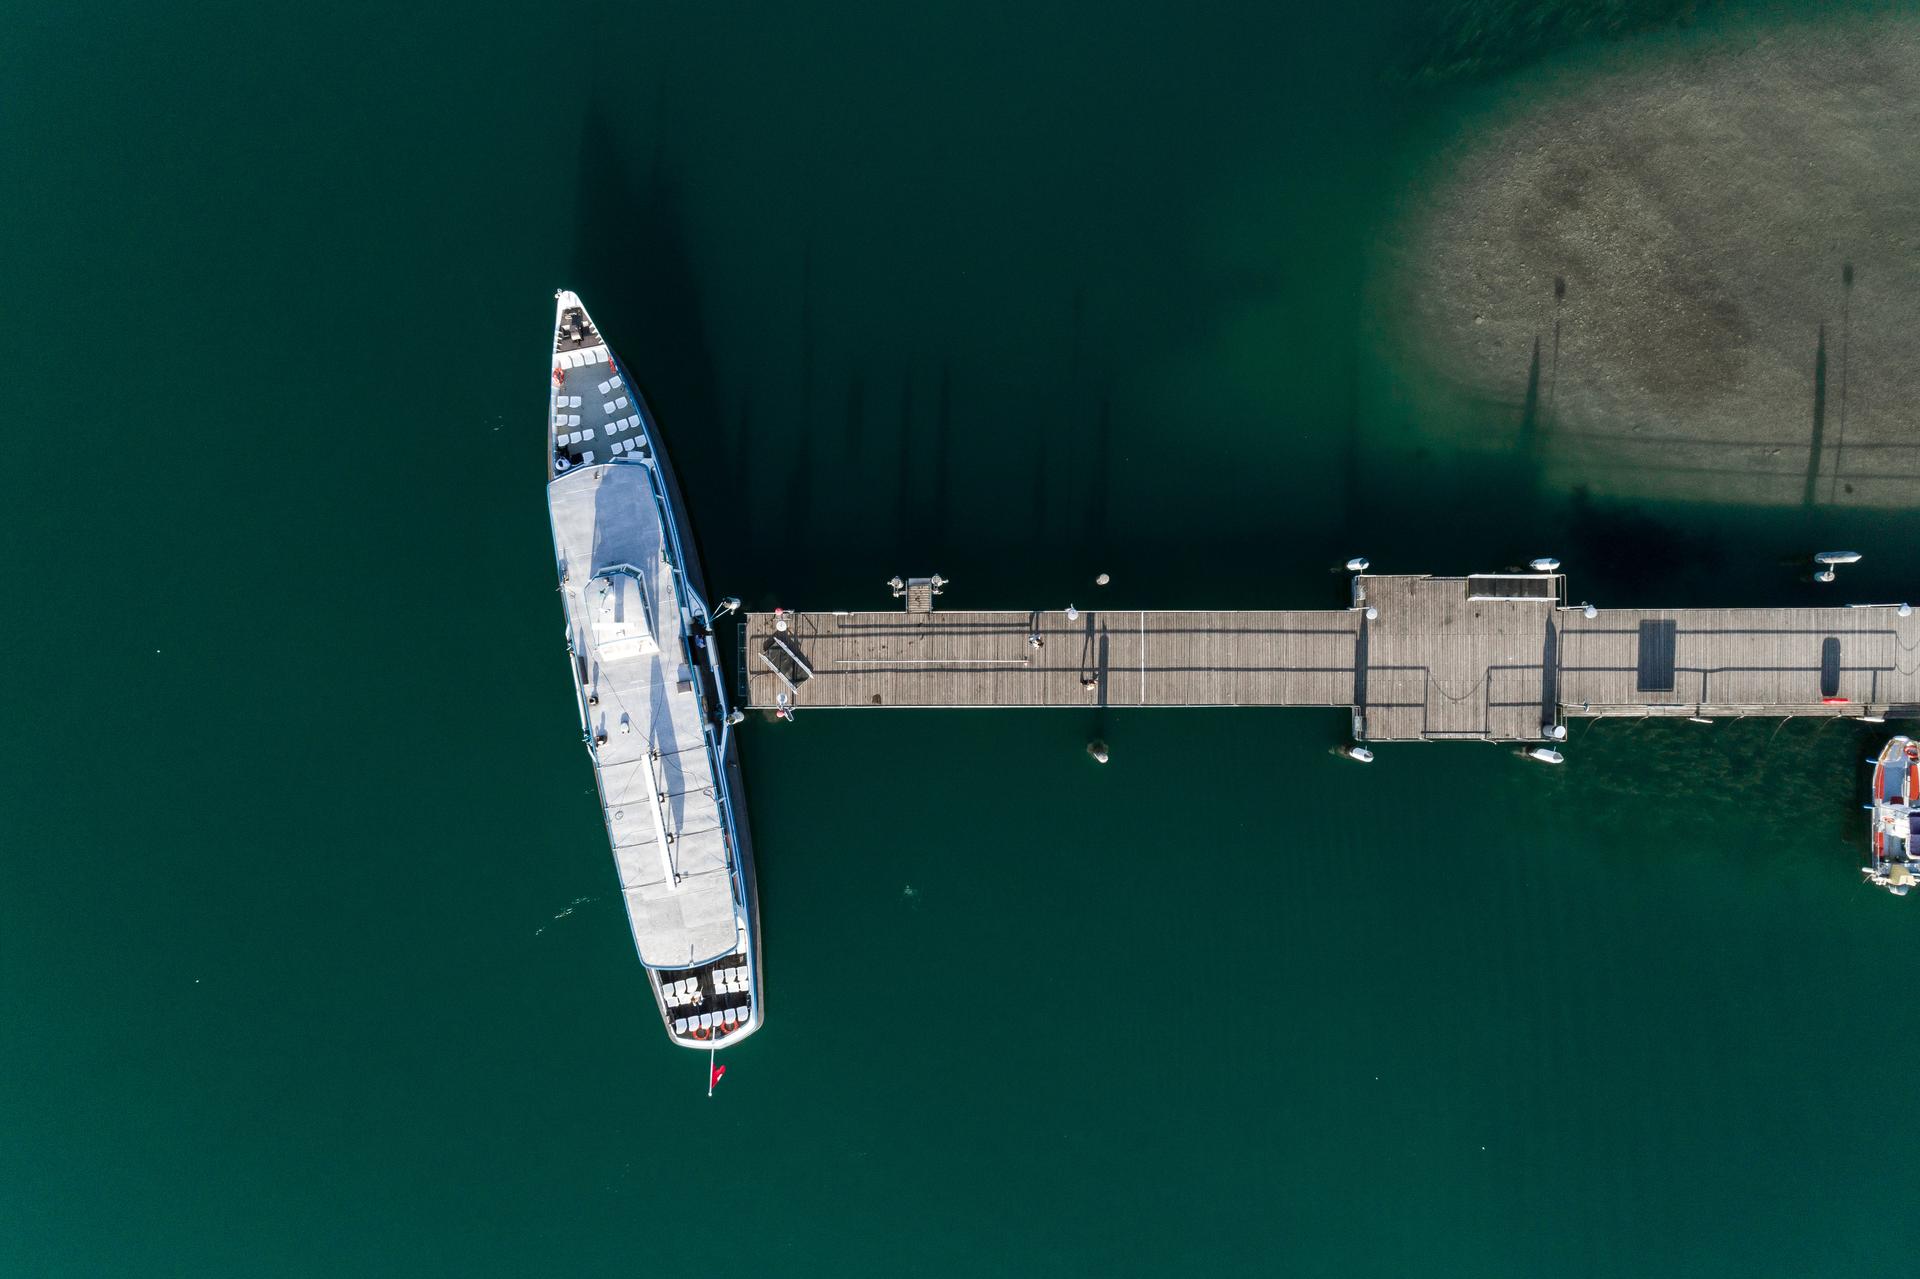 Luftaufnahme eines Schiffs, das an einem Pier angelegt ist, umgeben von tiefgrünem Wasser.